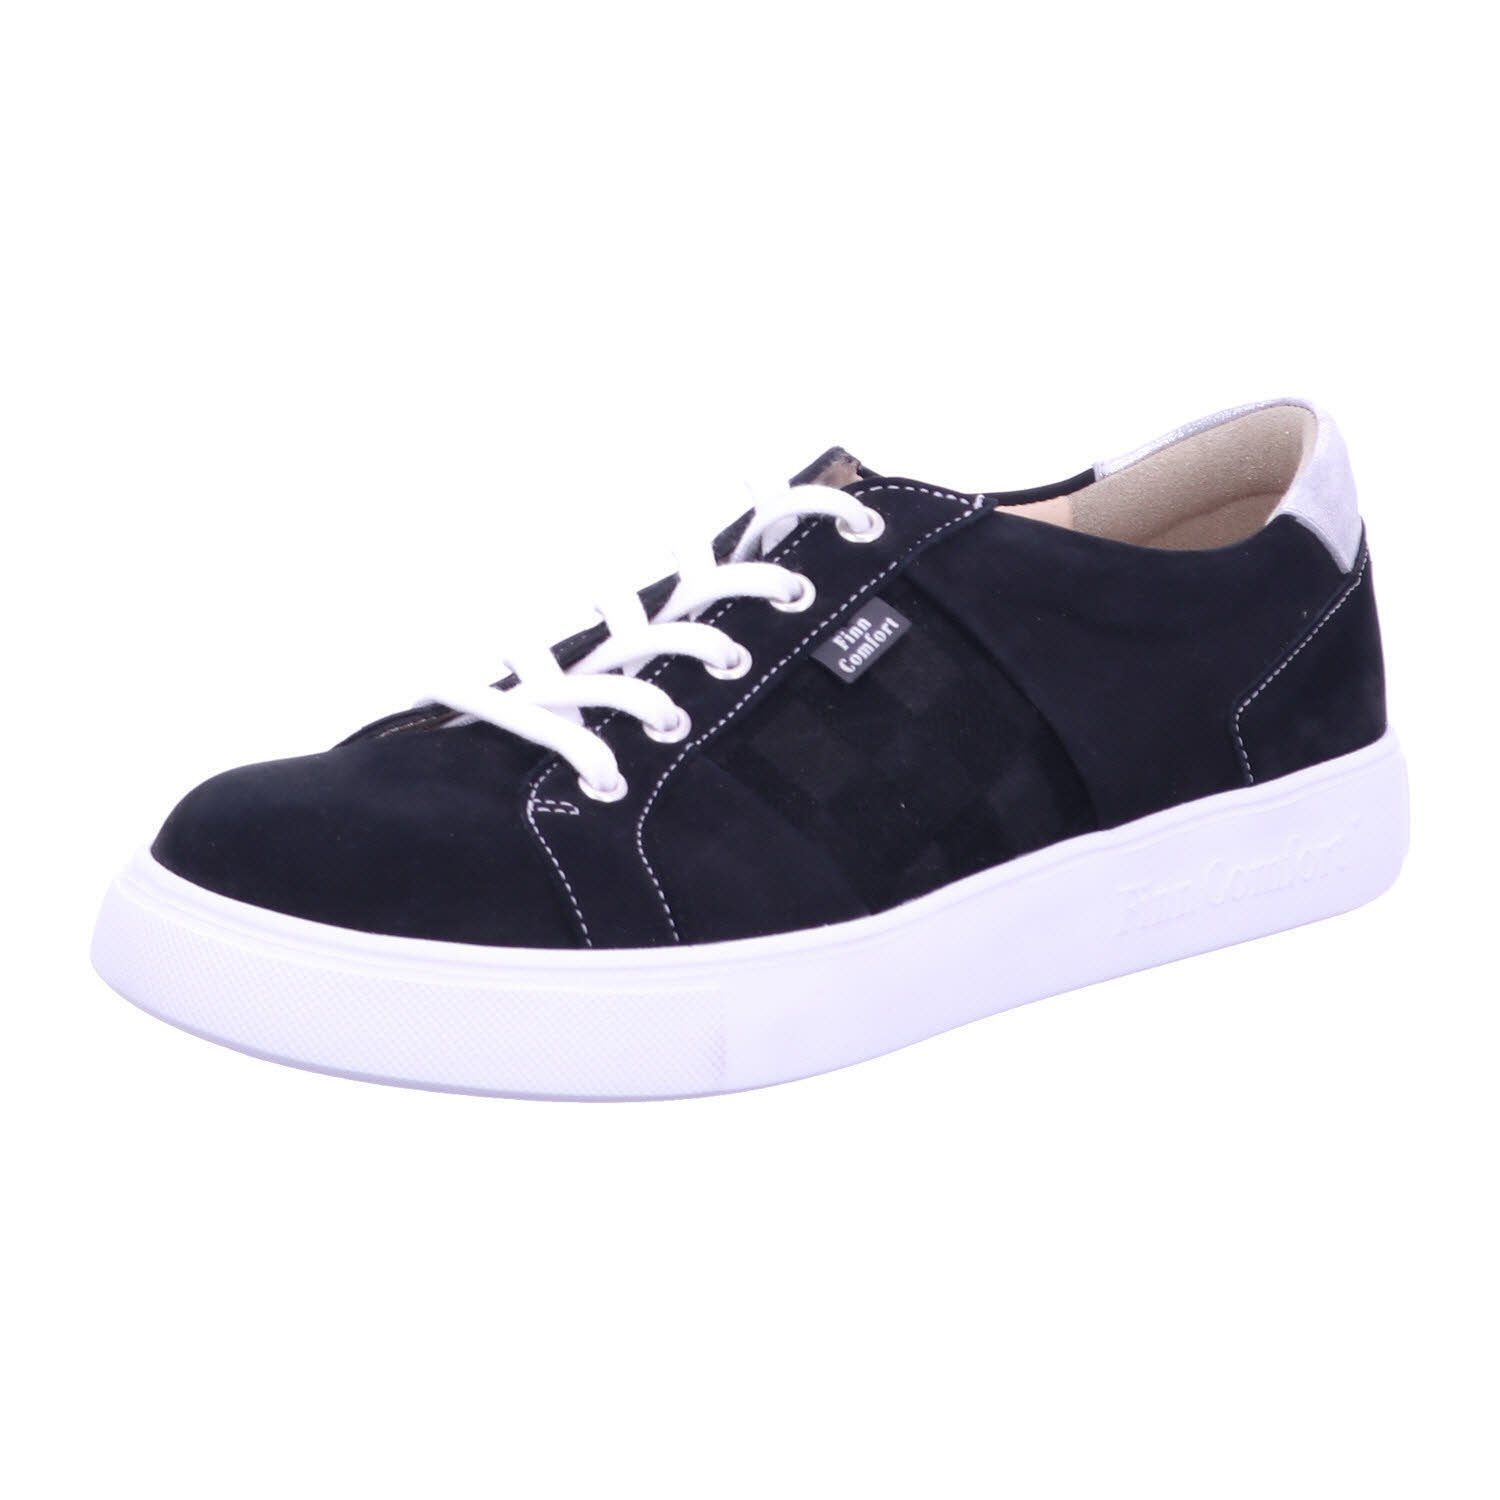 Finn Comfort Sneaker black/nero/silber